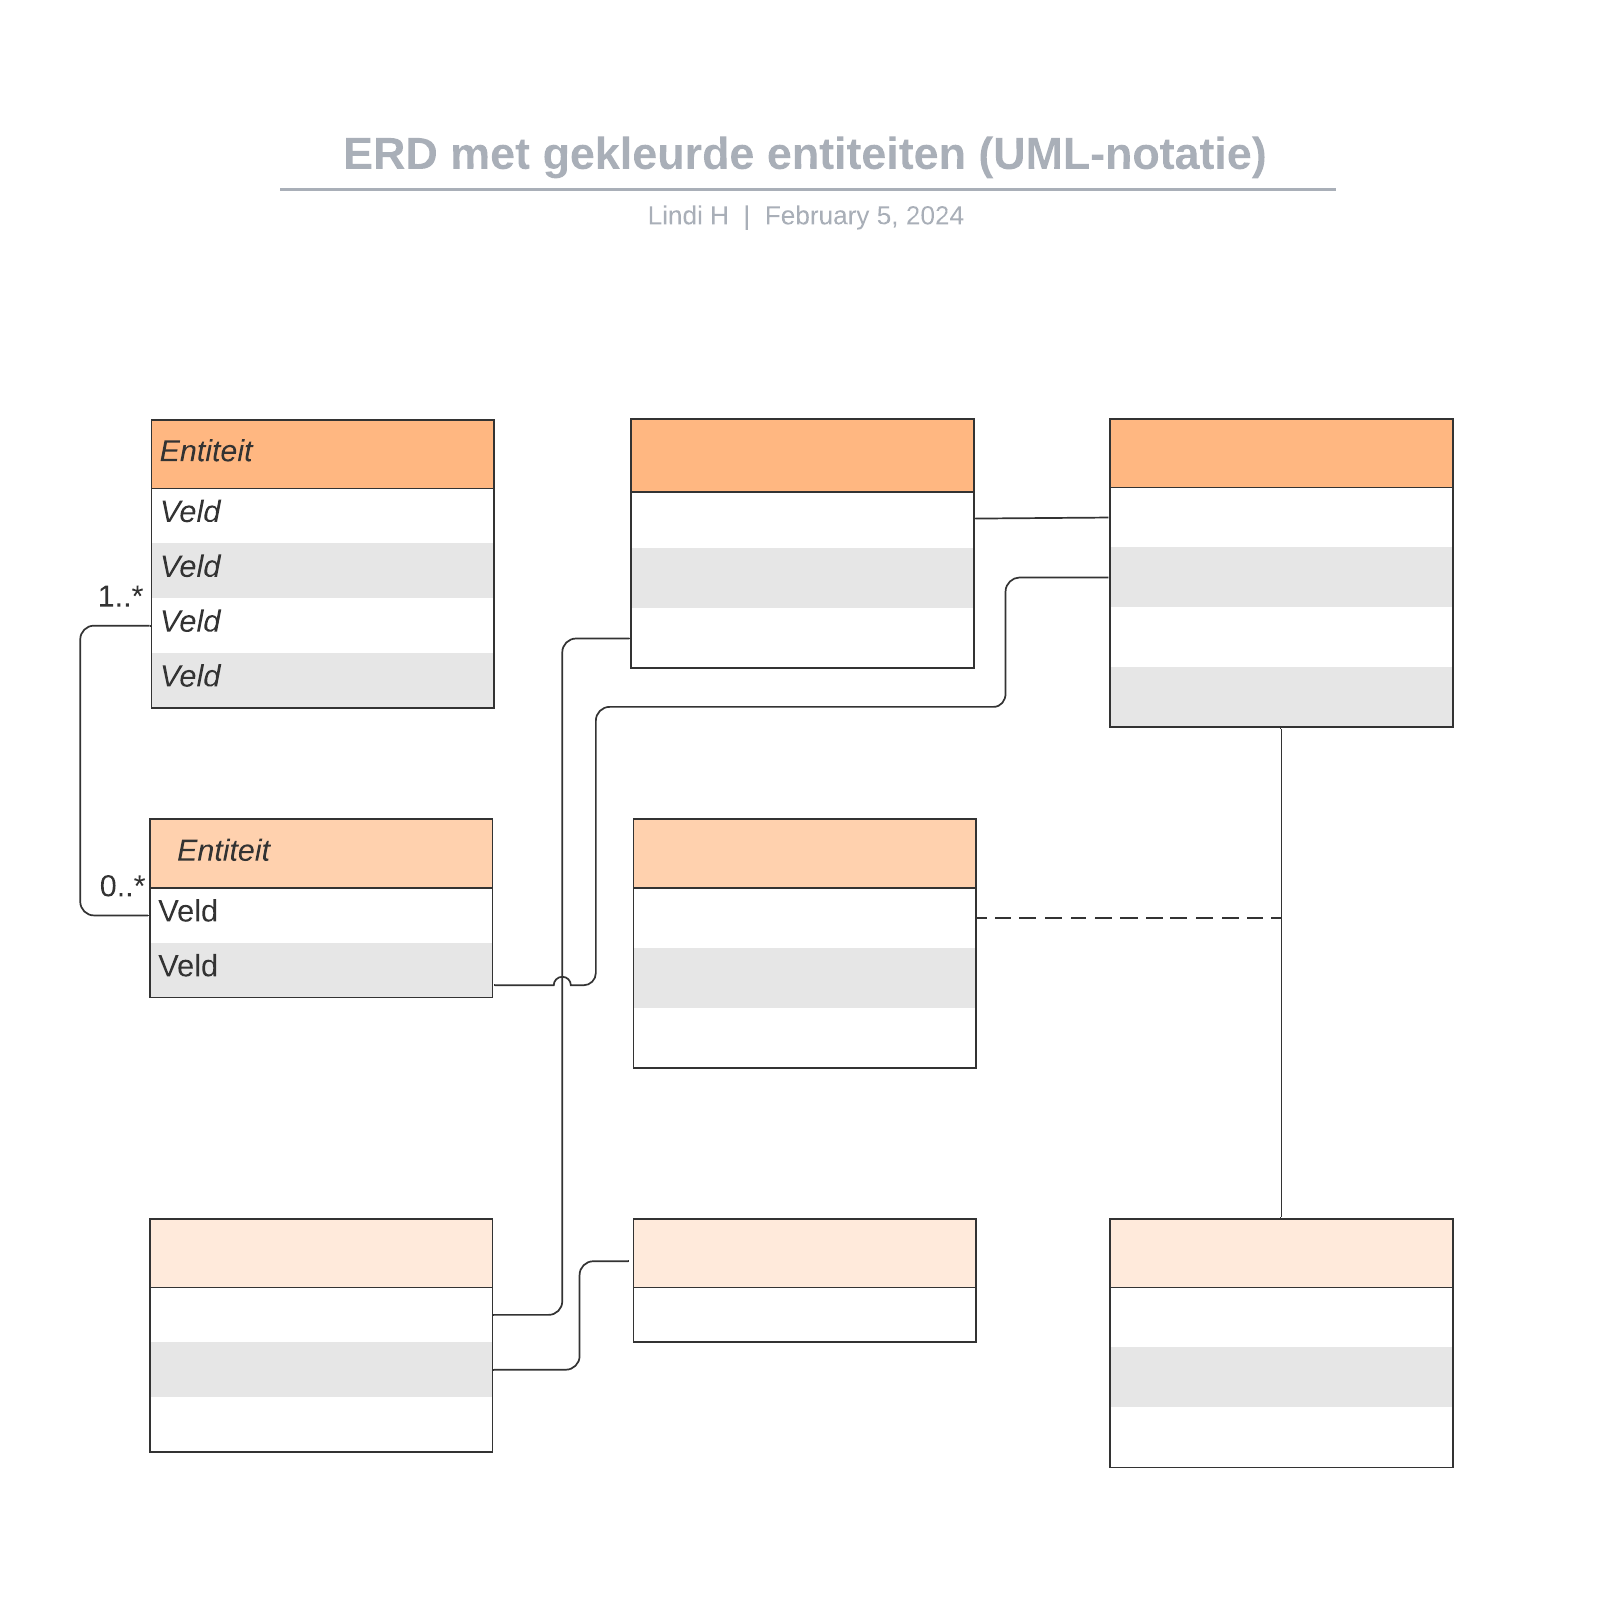 ERD met gekleurde entiteiten (UML-notatie) example